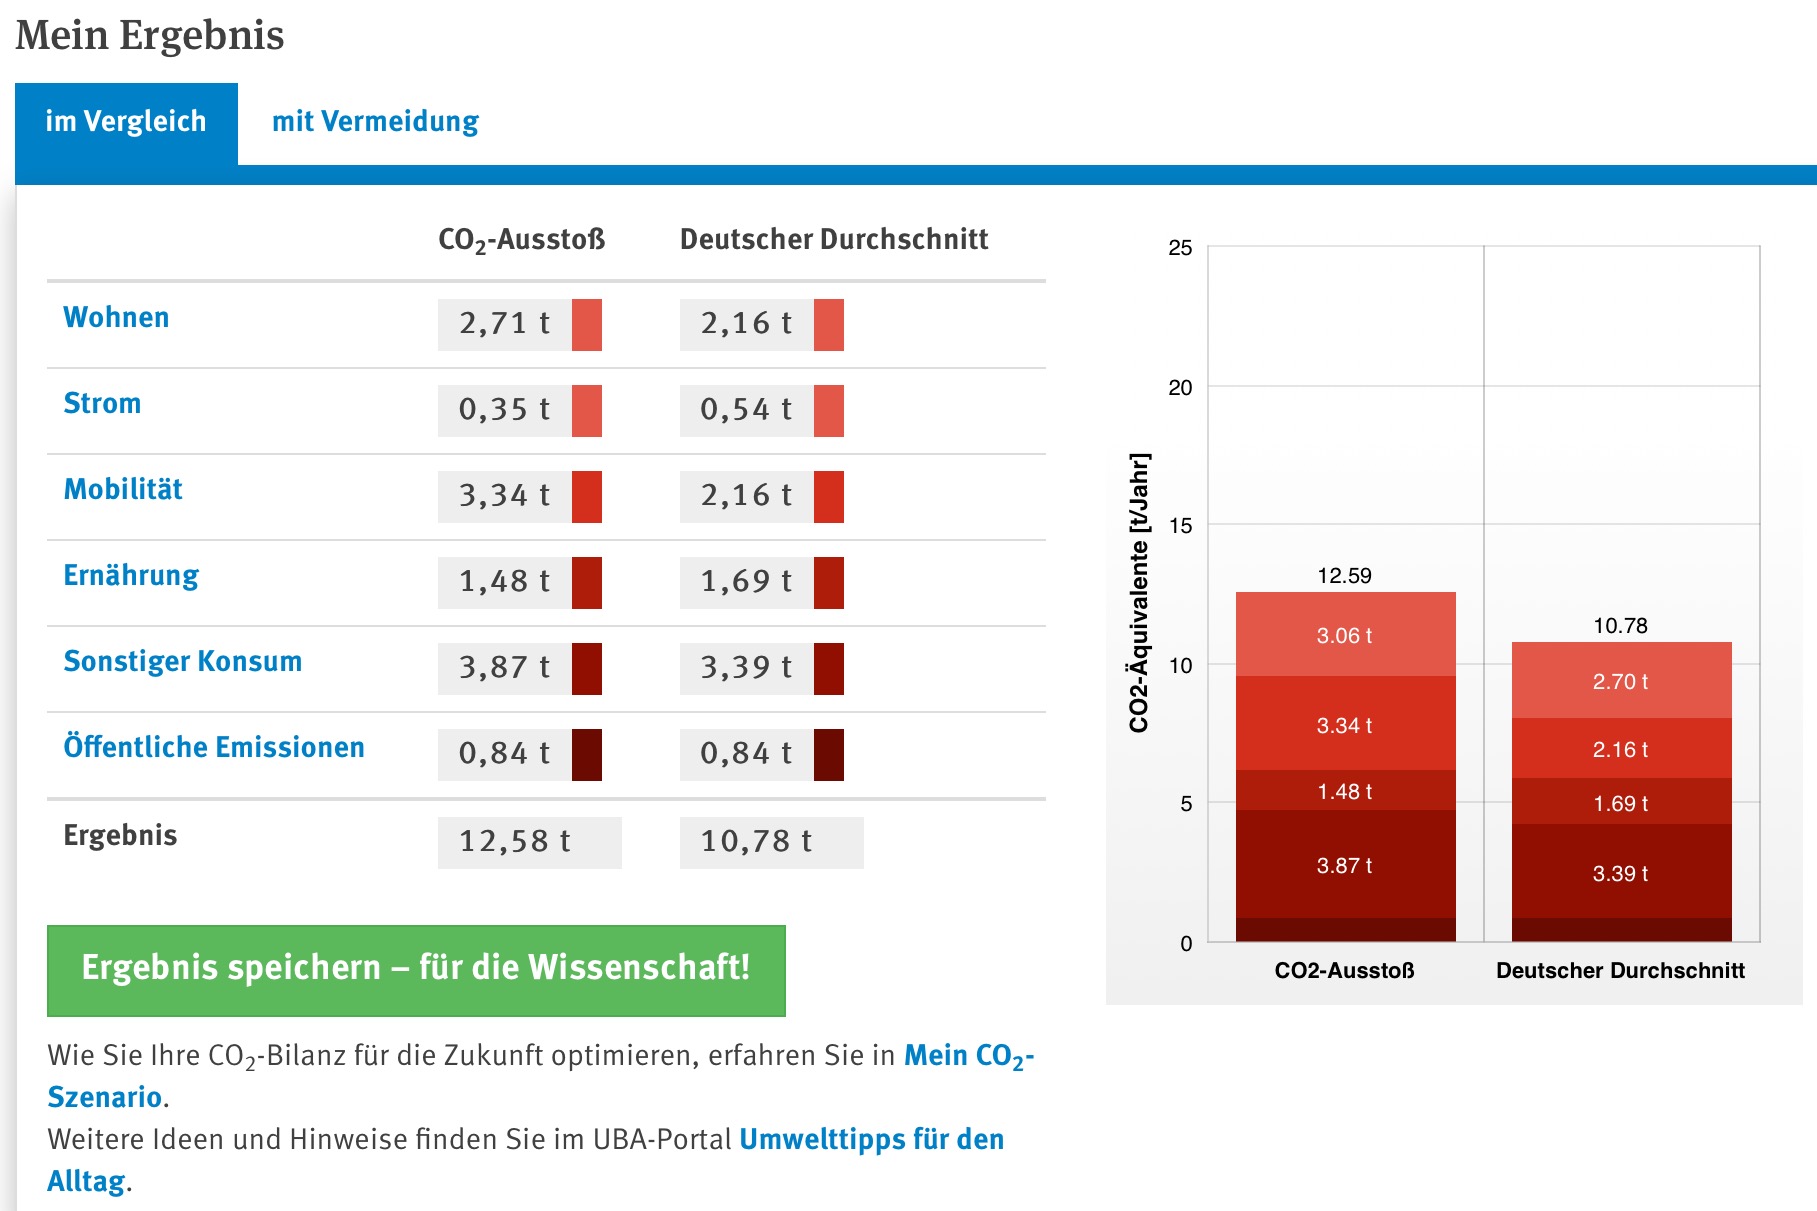 Übersicht des Ergebnisses einer Ermittlung zum CO2-Fußabdruck im Vergleich zum deutschen Durchschnitt